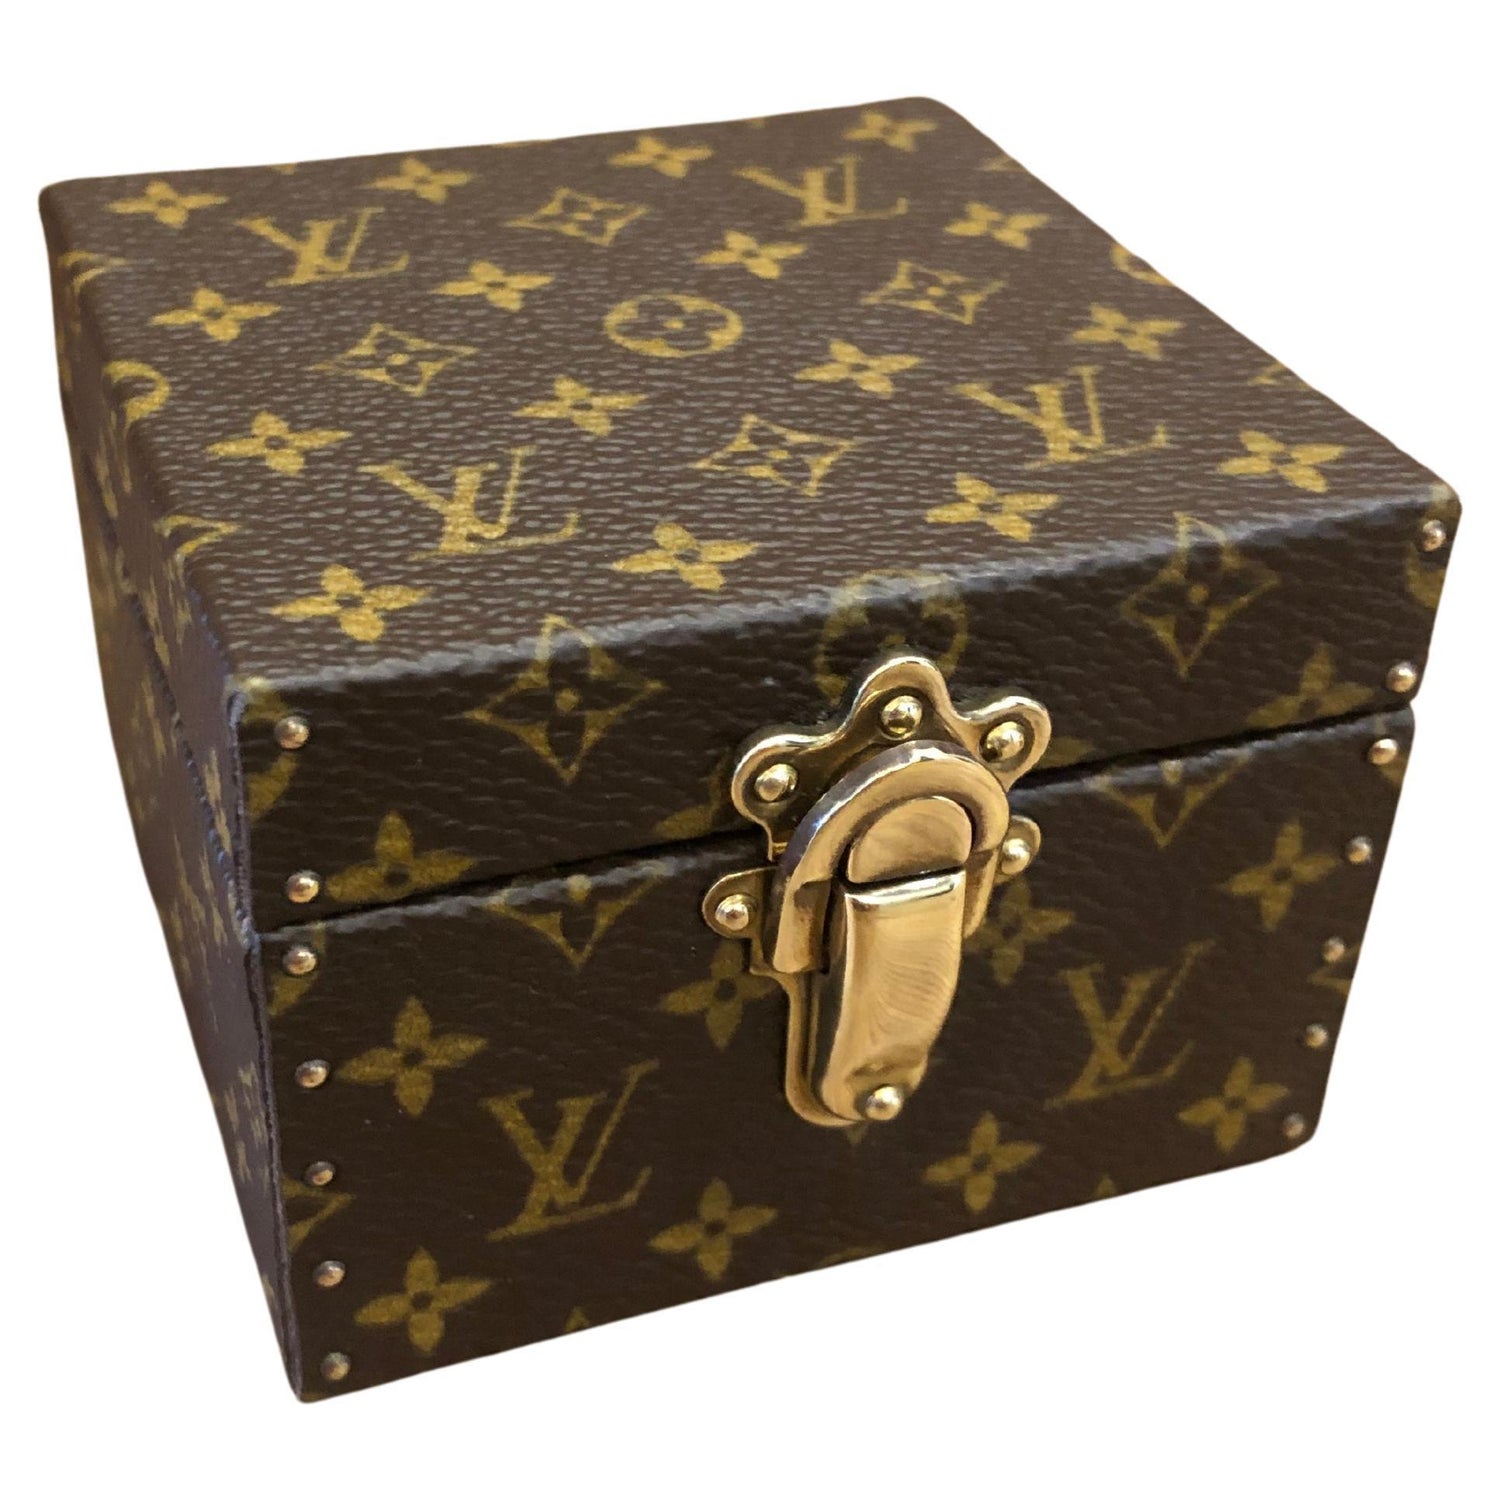 Sold at Auction: Louis Vuitton, LOUIS VUITTON MONOGRAM VIVIENNE  BOITE-AMUSIK MUSIC BOX MINI TRUNK CASE